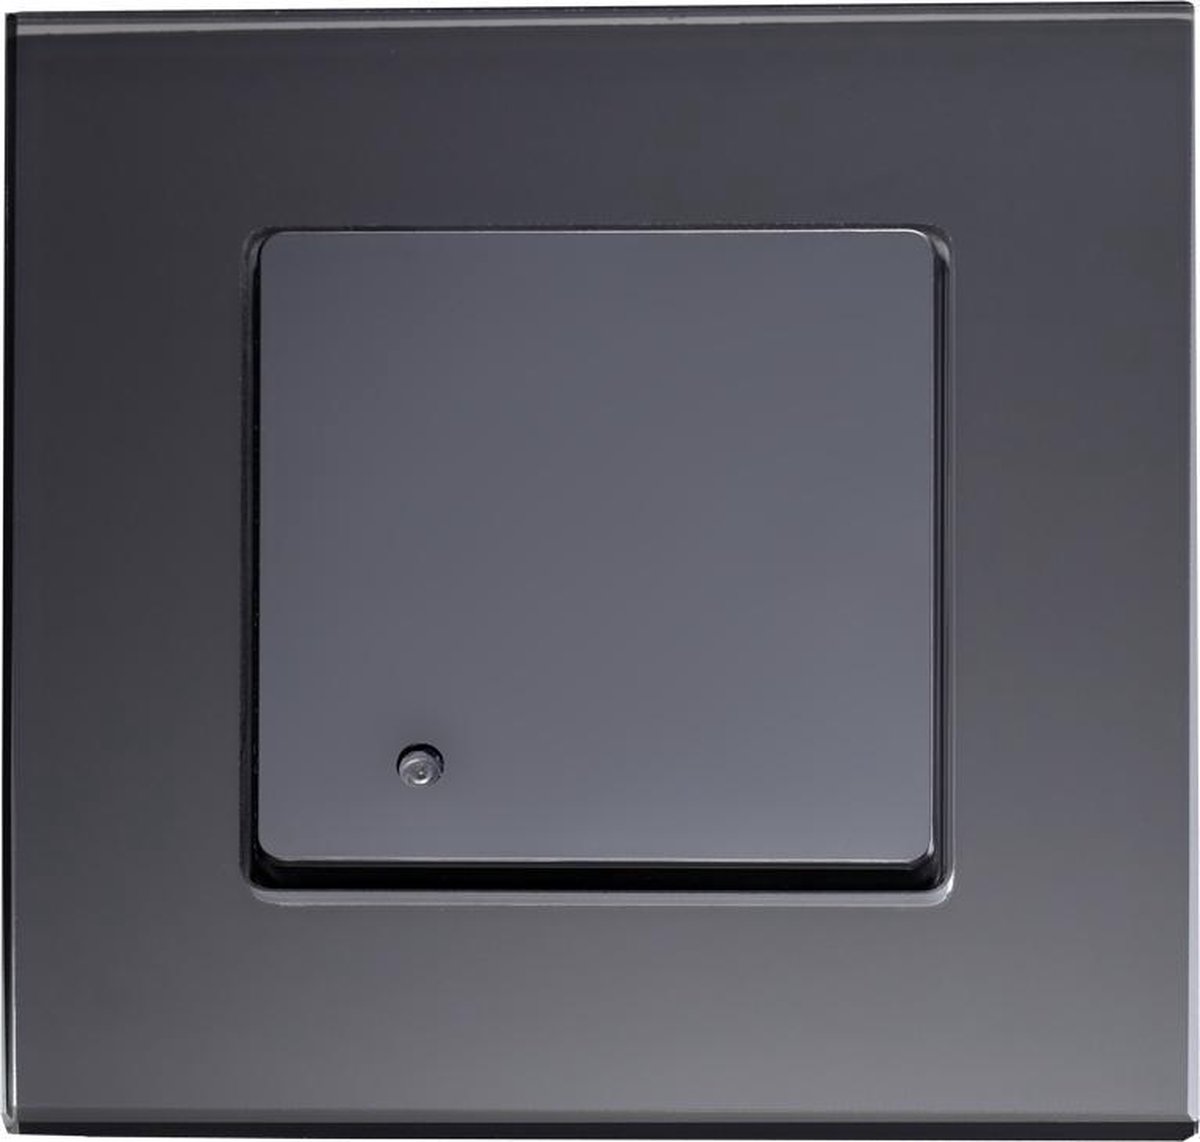 V-tac VT-8084 Inbouw microwave sensor - bewegingsmelder - zwart